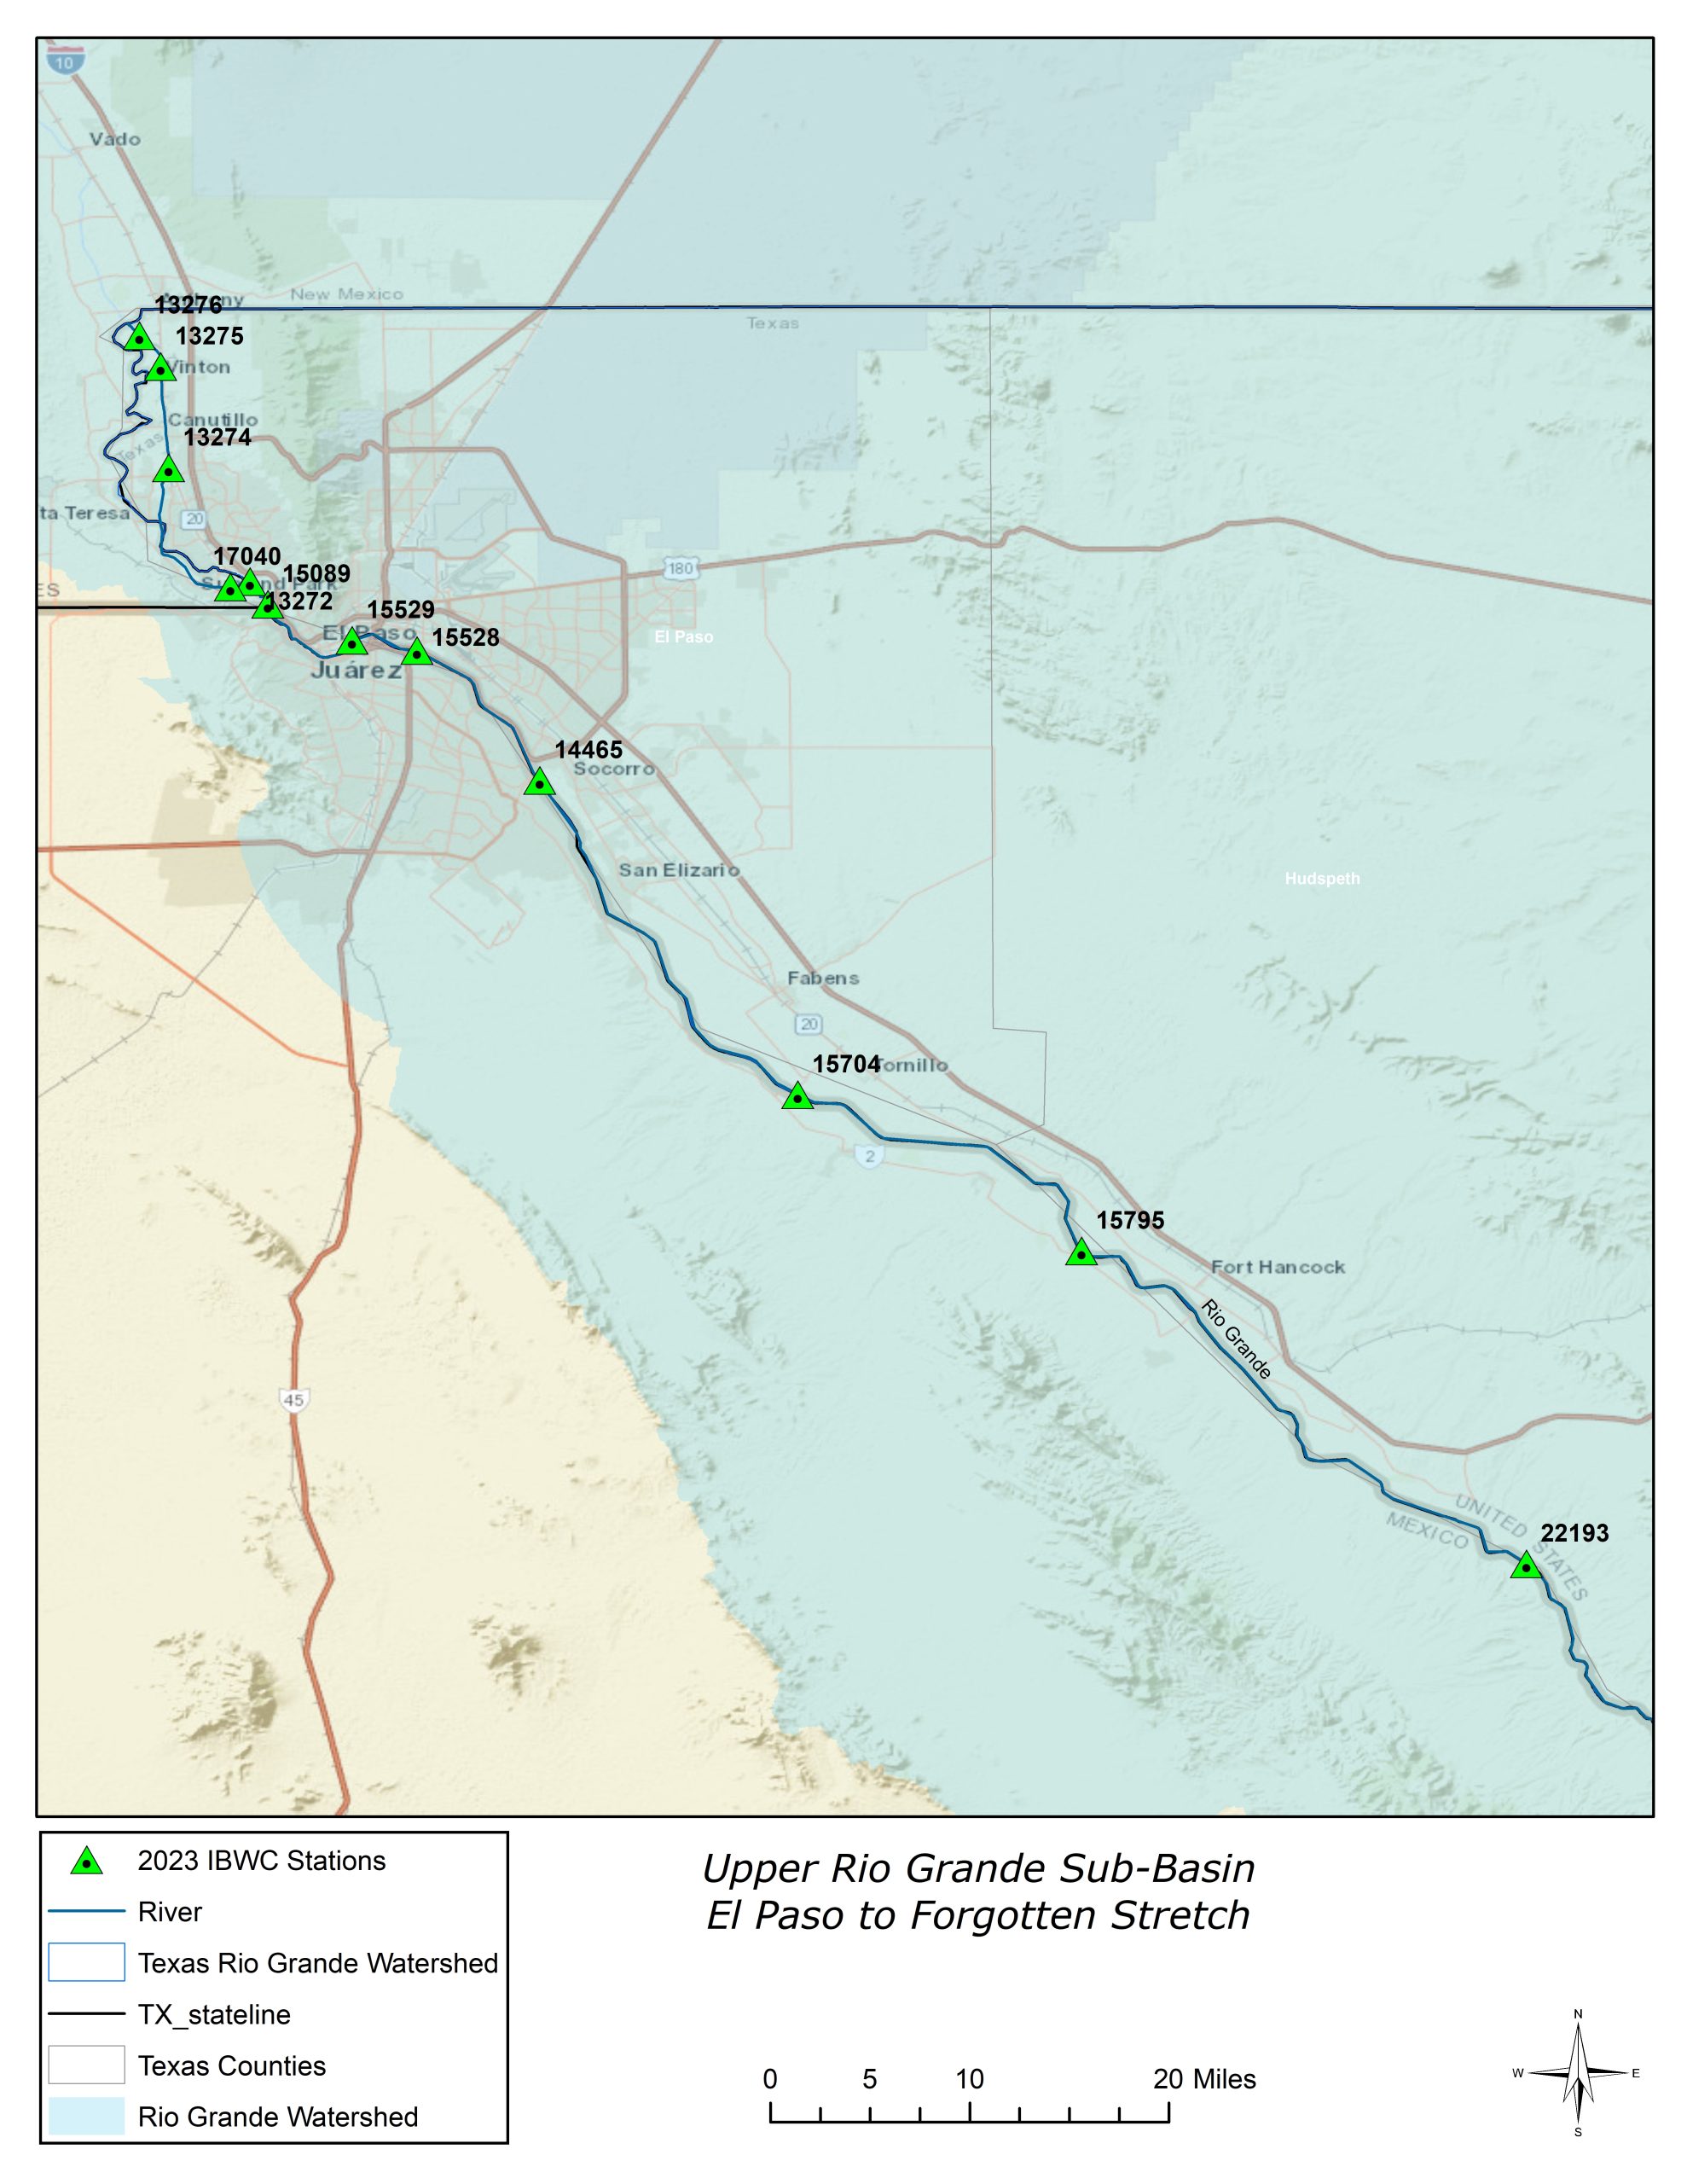 Upper Rio Grande Sub-Basin - El Paso to Forgotten Stretch